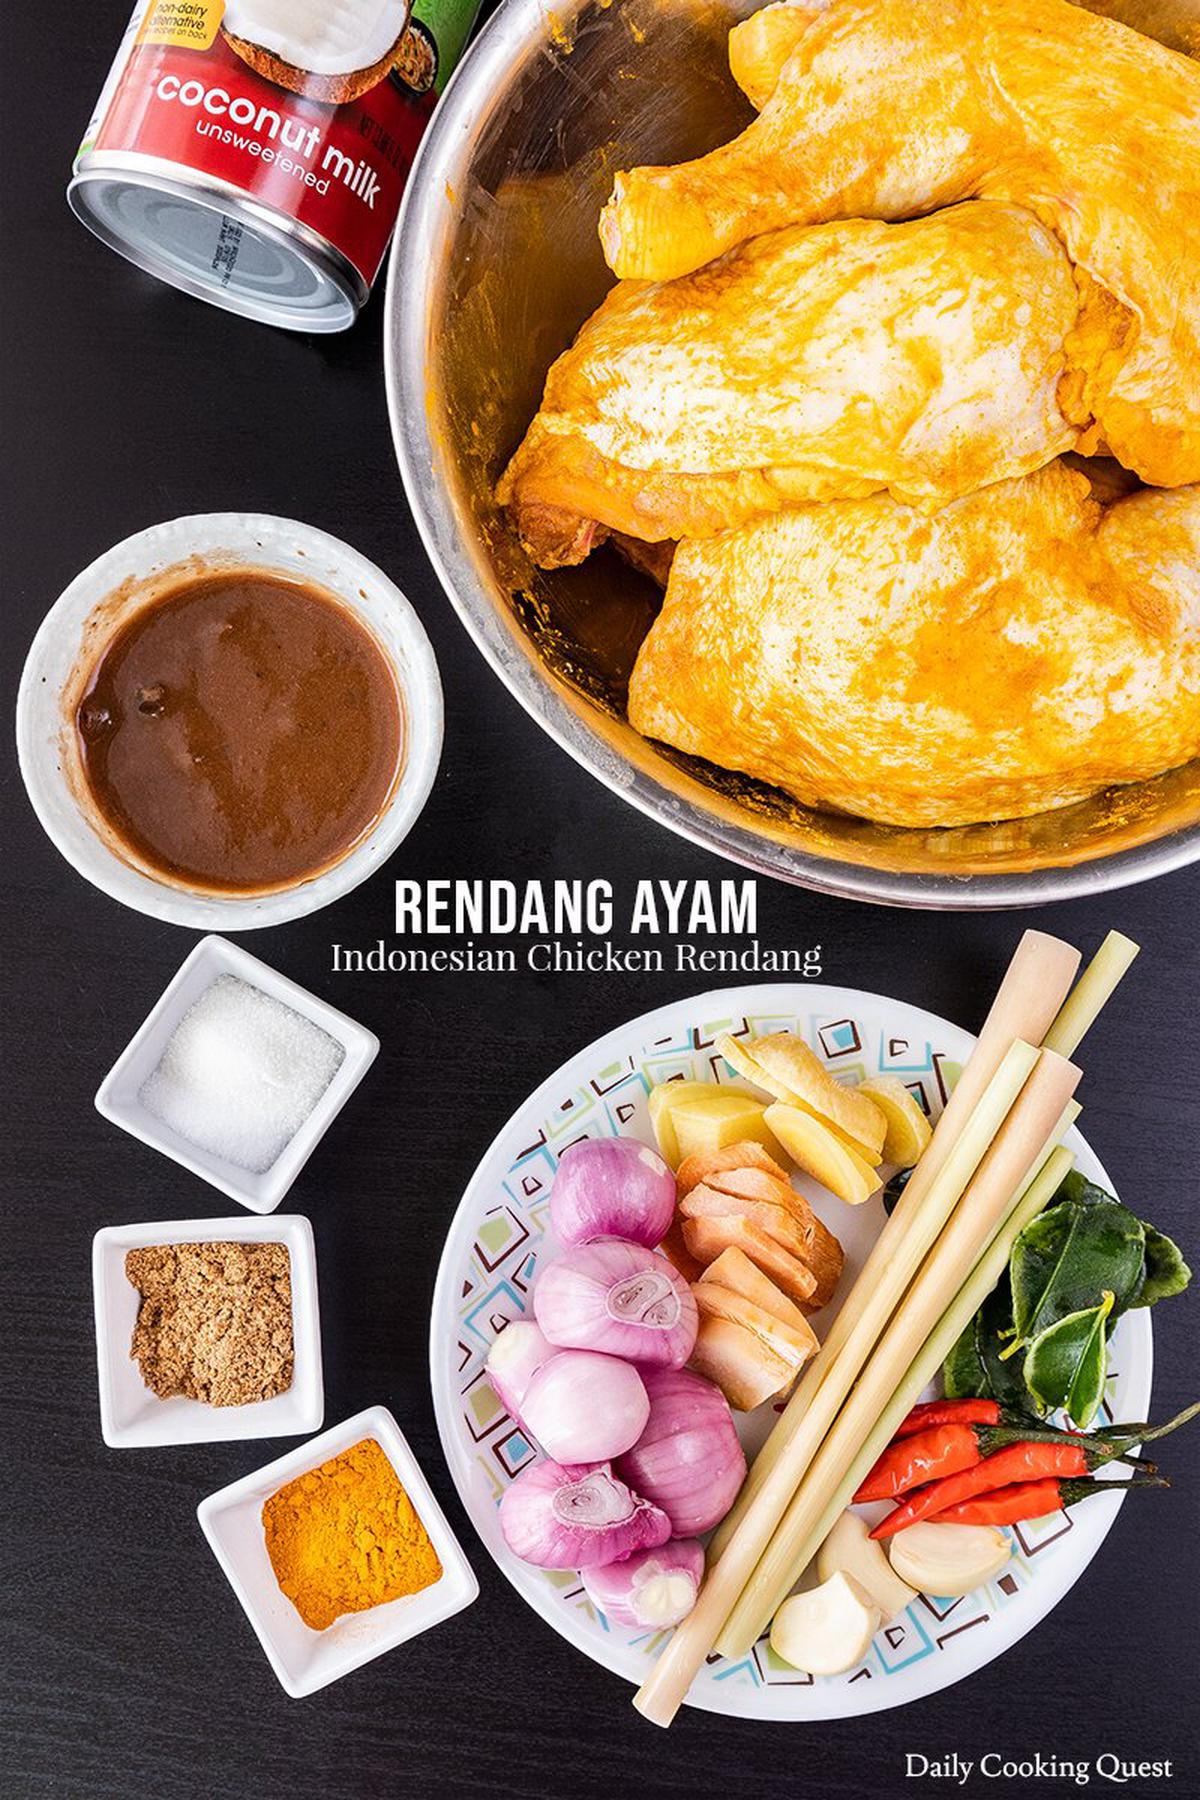 Ingredients for Rendang Ayam (Indonesian Chicken Rendang)